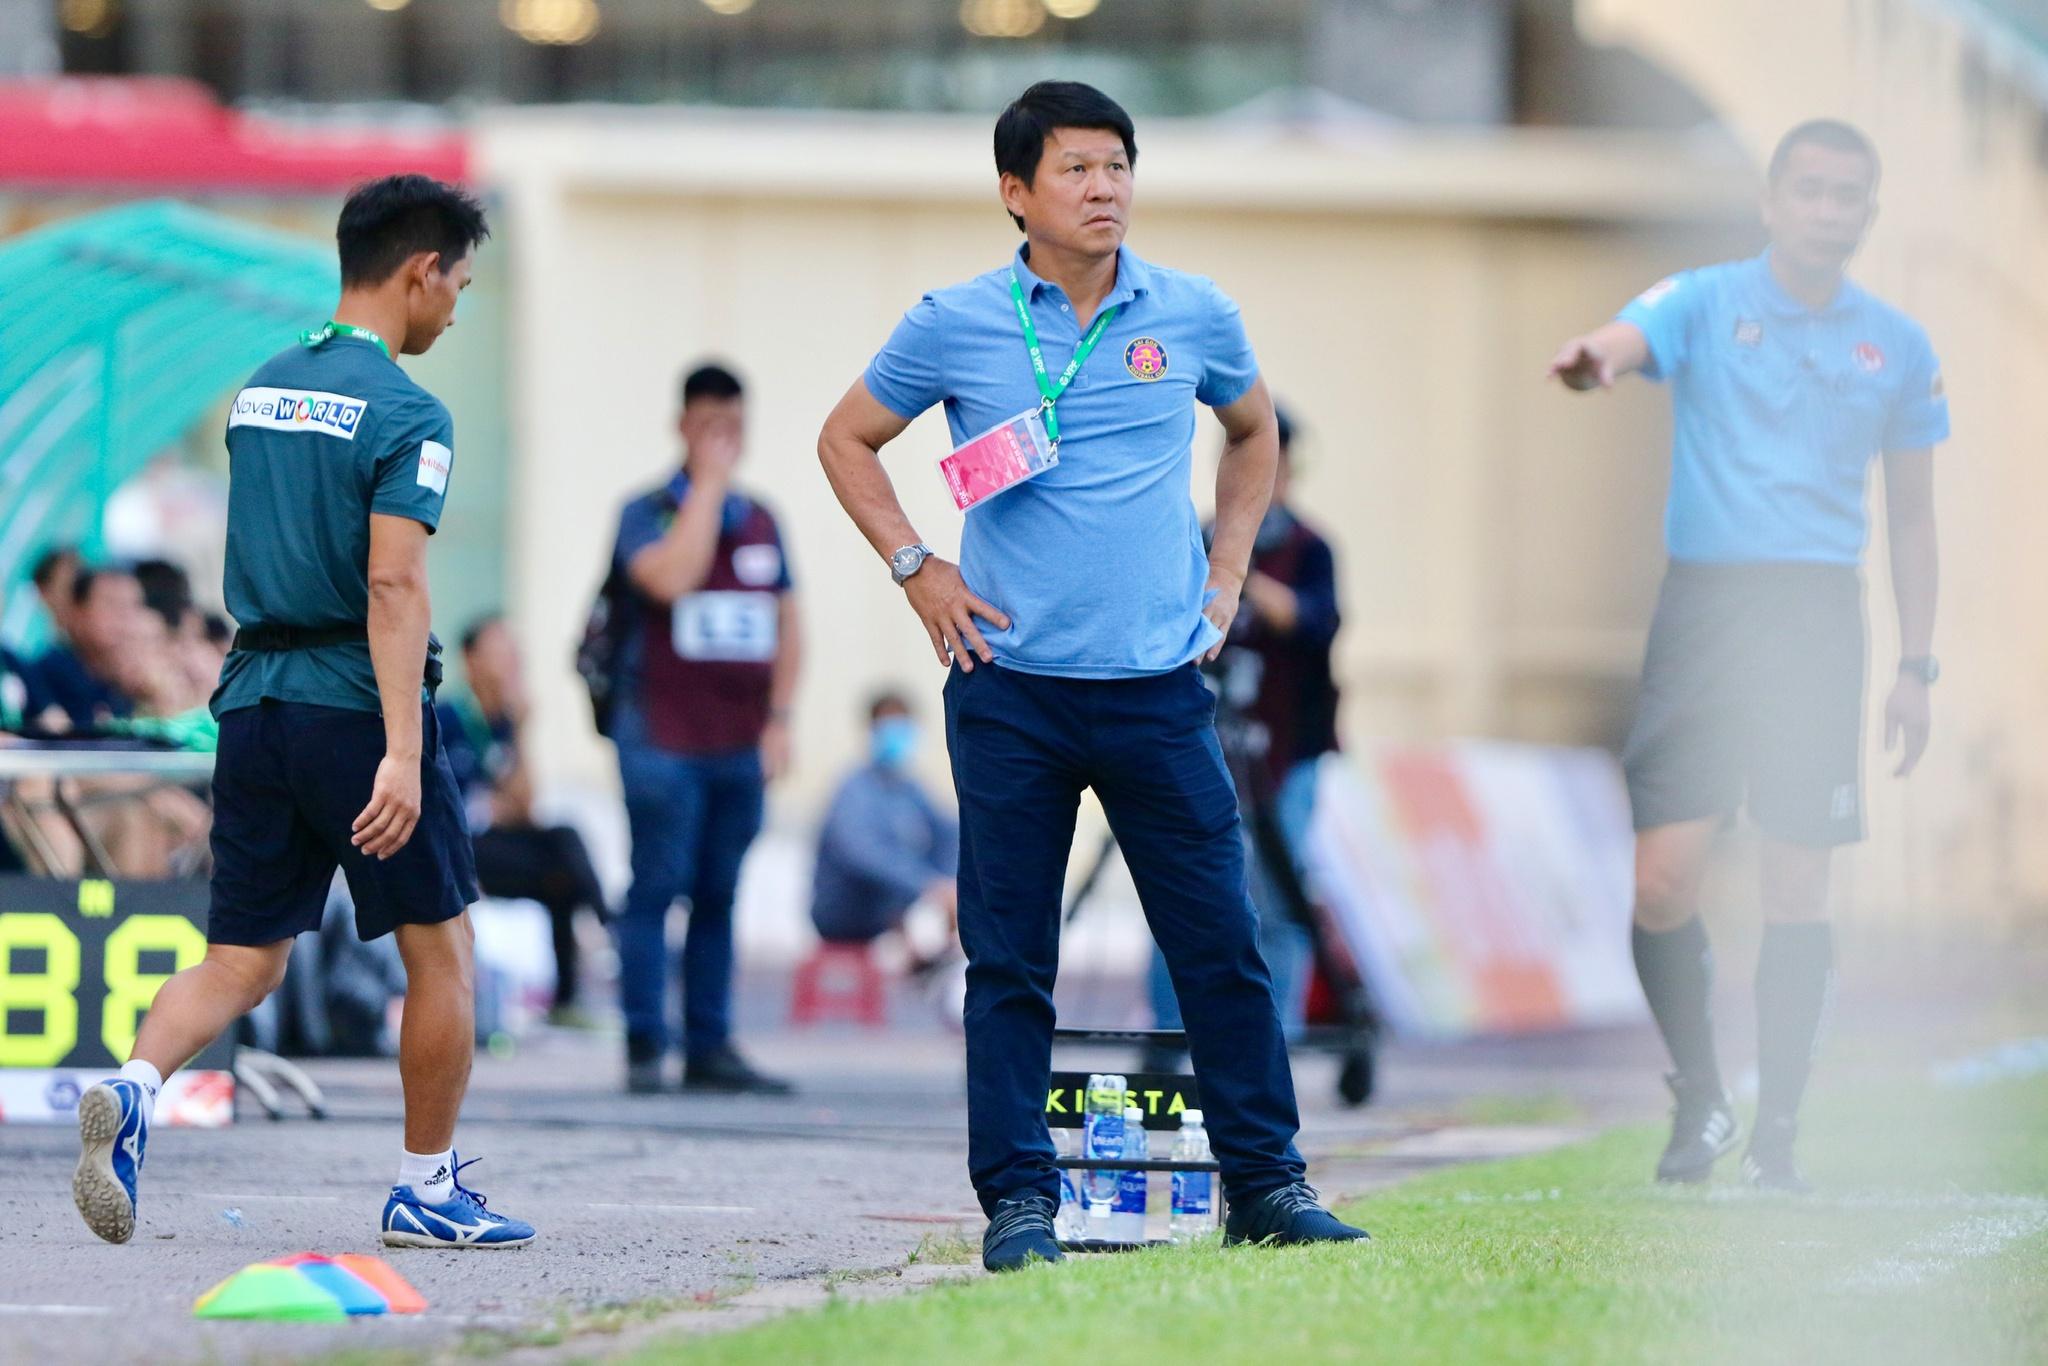 Kết quả V-League 2021, Bình Định 1-0 Sài Gòn FC: Hồ Tấn Tài khiến 'hung thần' Đỗ Merlo nín lặng! - ảnh 5